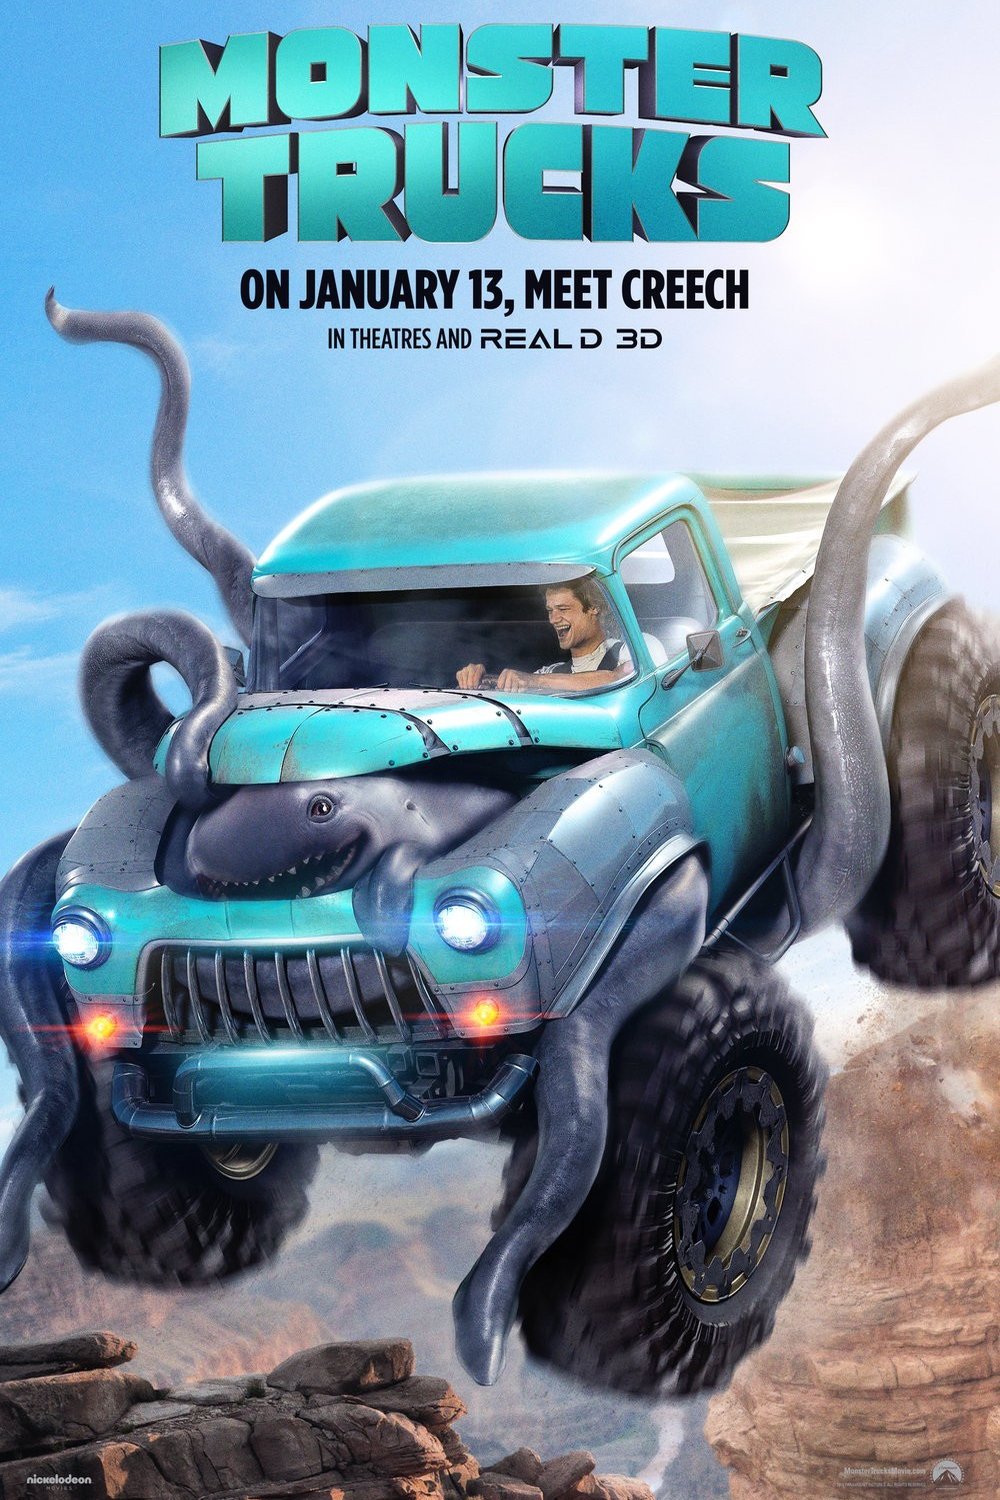 Poster of the movie Monster Trucks